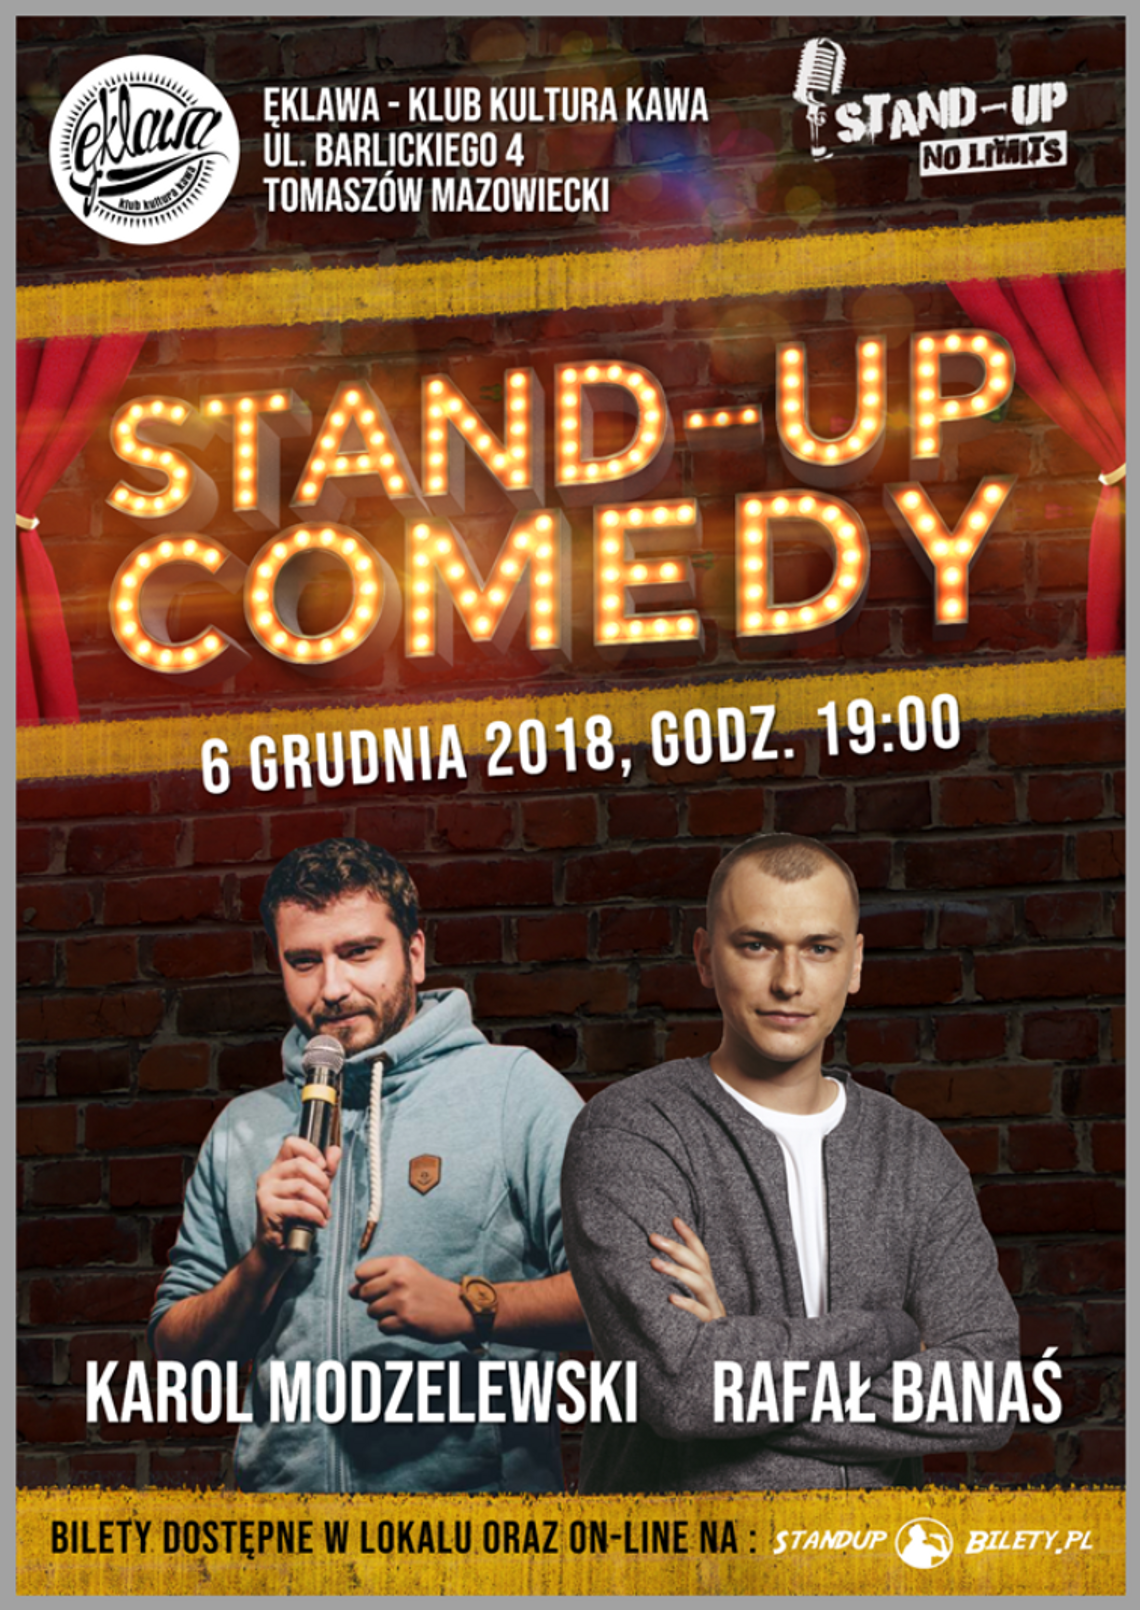  STAND-UP COMEDY SHOW  Karol Modzelewski i Rafał Banaś